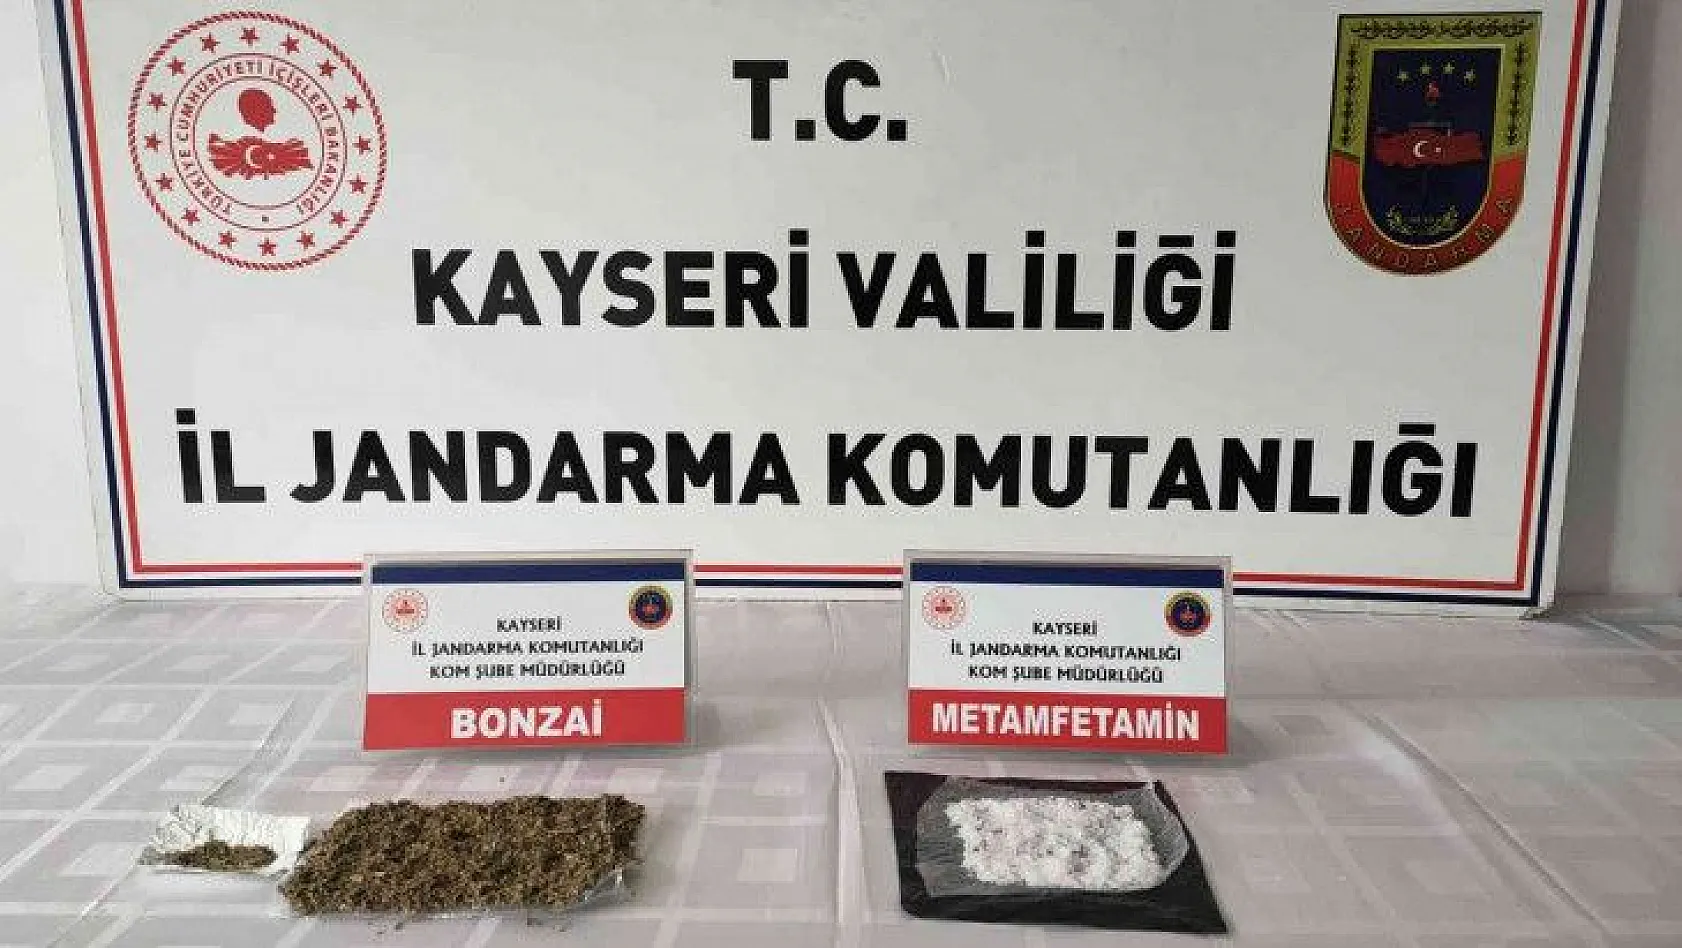 İstanbul'dan Kayseri'ye uyuşturucu taşıyordu!